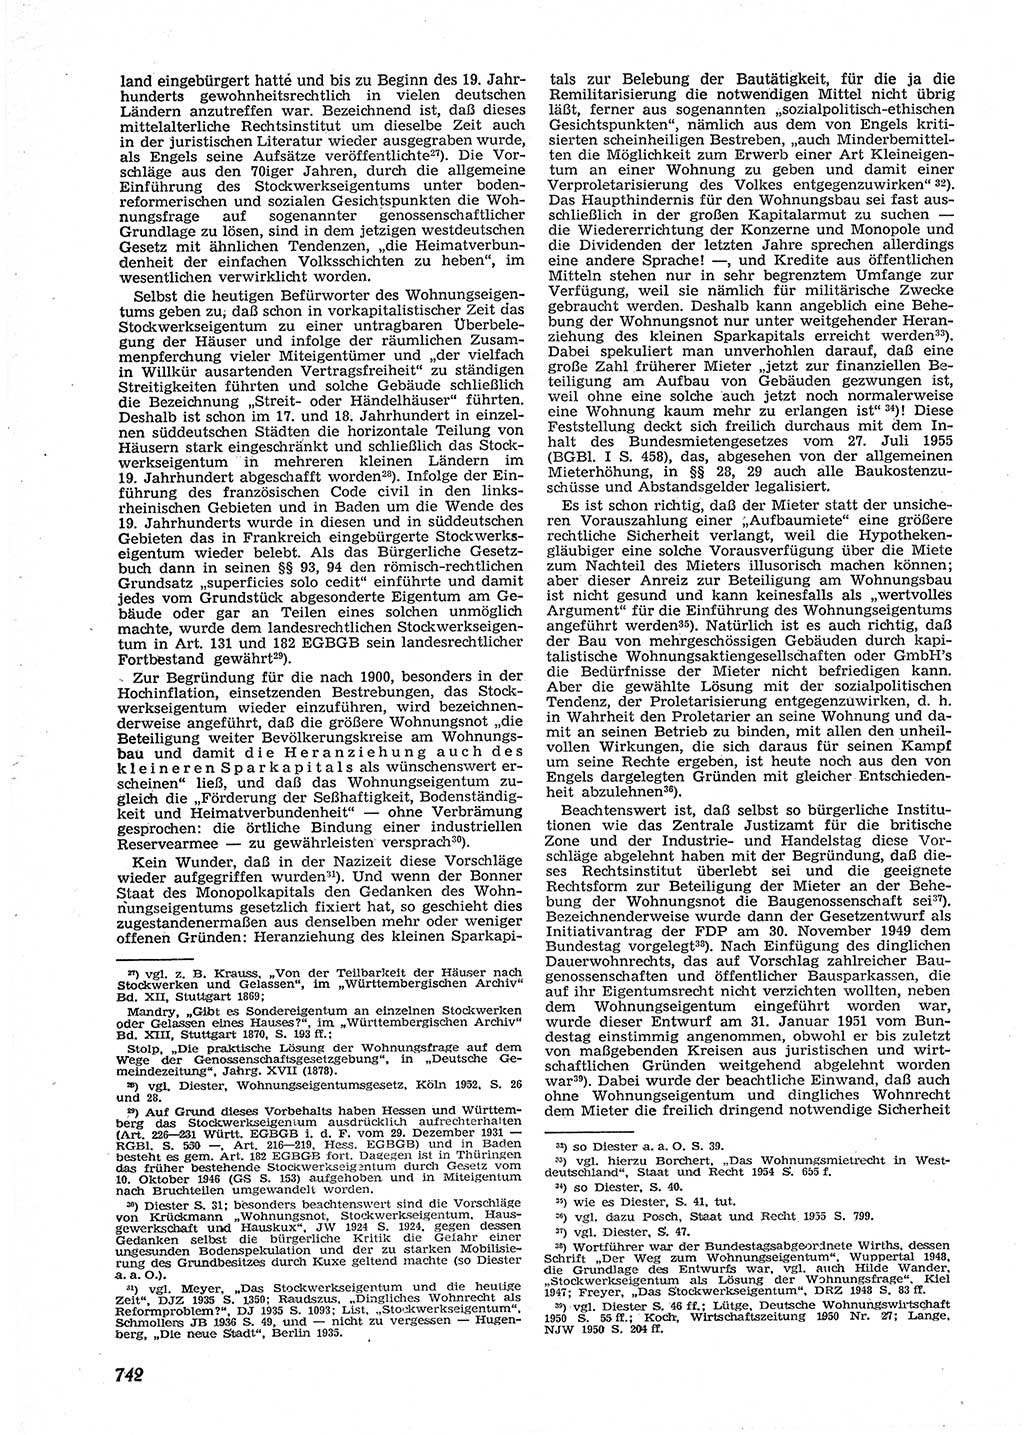 Neue Justiz (NJ), Zeitschrift für Recht und Rechtswissenschaft [Deutsche Demokratische Republik (DDR)], 9. Jahrgang 1955, Seite 742 (NJ DDR 1955, S. 742)